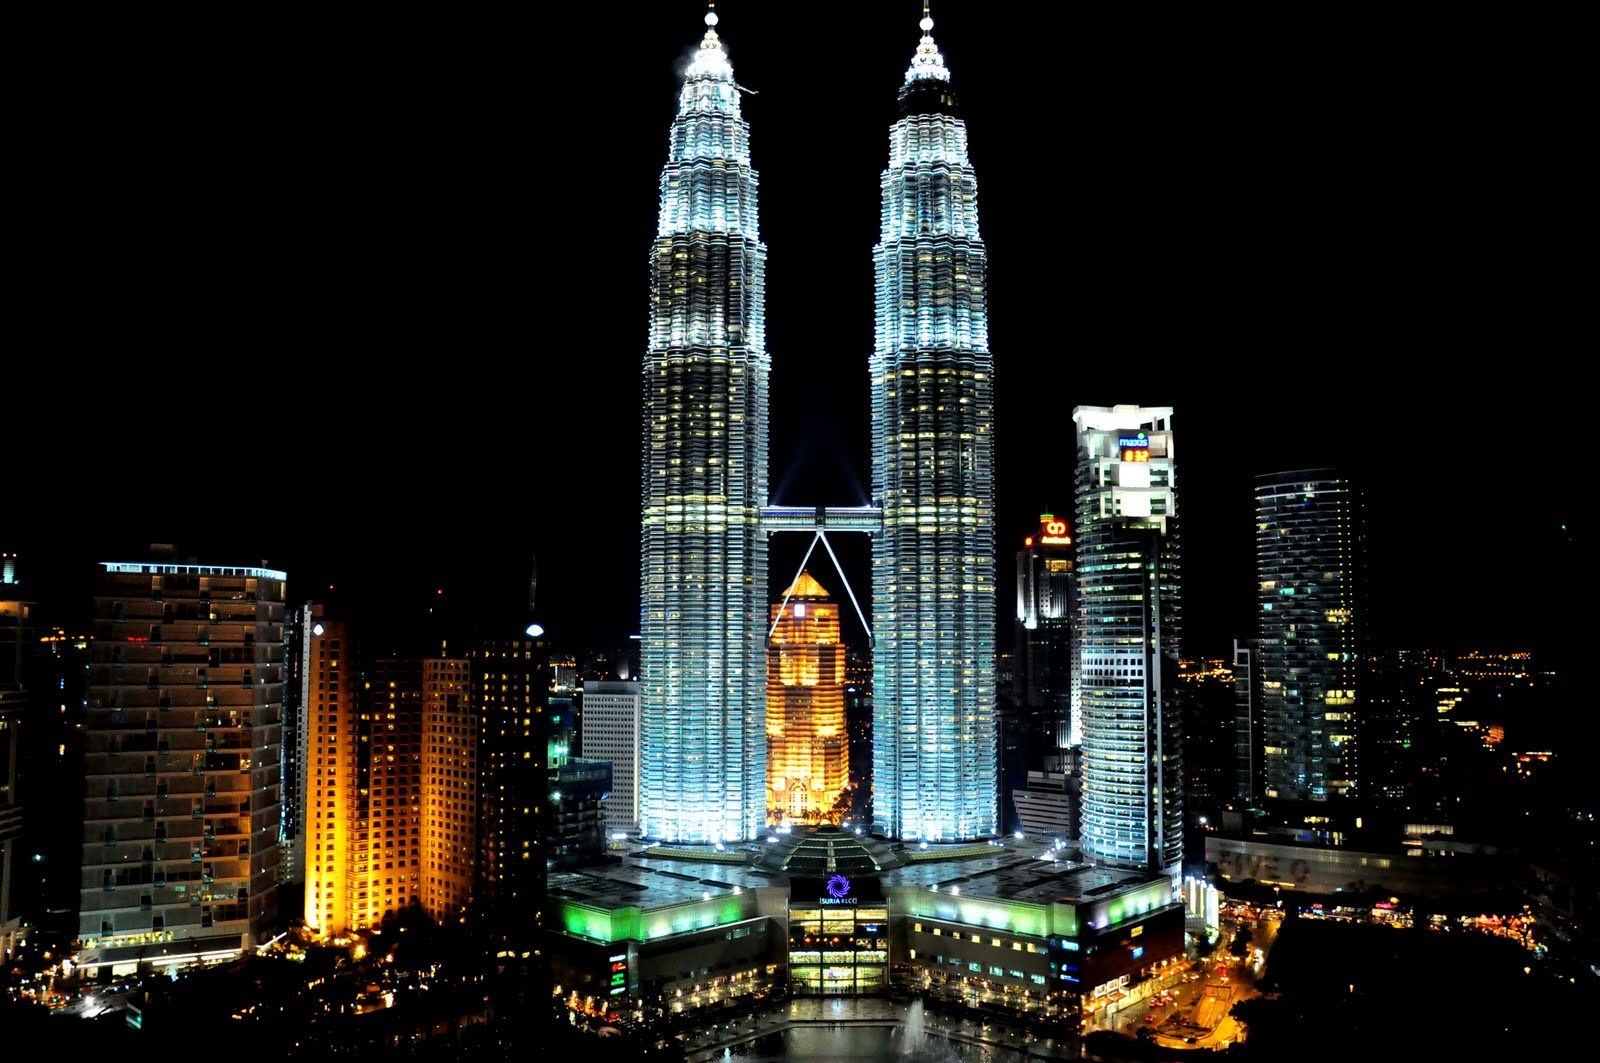 馬來西亞自由行攻略, 馬來西亞自由行遊記, 吉隆坡自由行攻略, 吉隆坡自由行遊記馬來西亞旅遊blog, 吉隆坡旅遊blog, 馬來西亞景點, 吉隆坡景點, 雙子塔Petronas Twin Towers